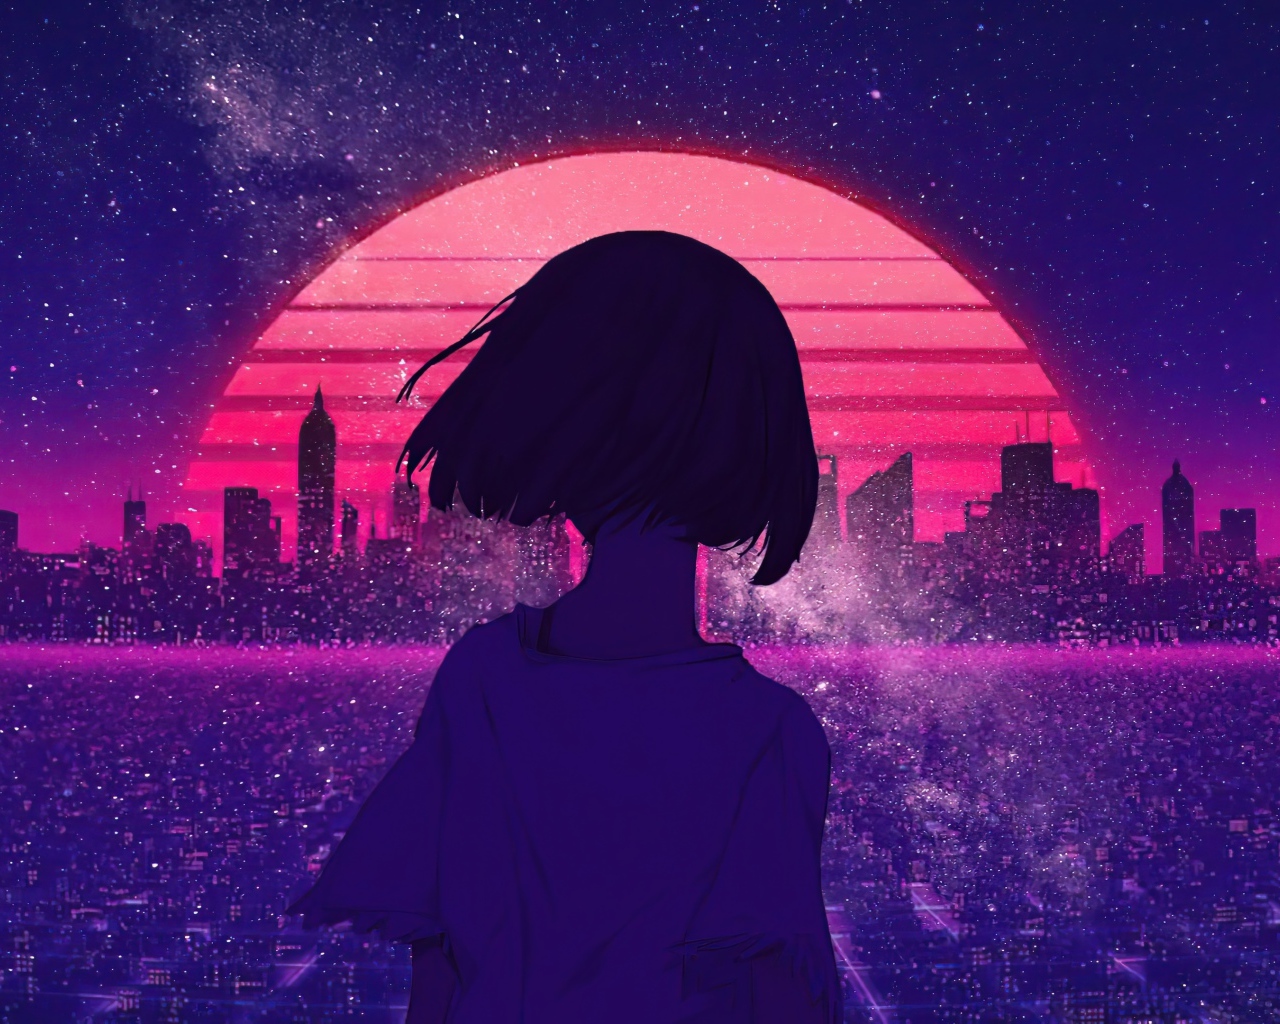 Không thể khái quát hết được sức thu hút của nhân vật anime girl lúc đêm xuống. Hãy cùng đắm chìm trong không khí đầy bí ẩn của thành phố đêm metropolis và cảm nhận sự hiện diện sống động của các nhân vật trong bức tranh! 